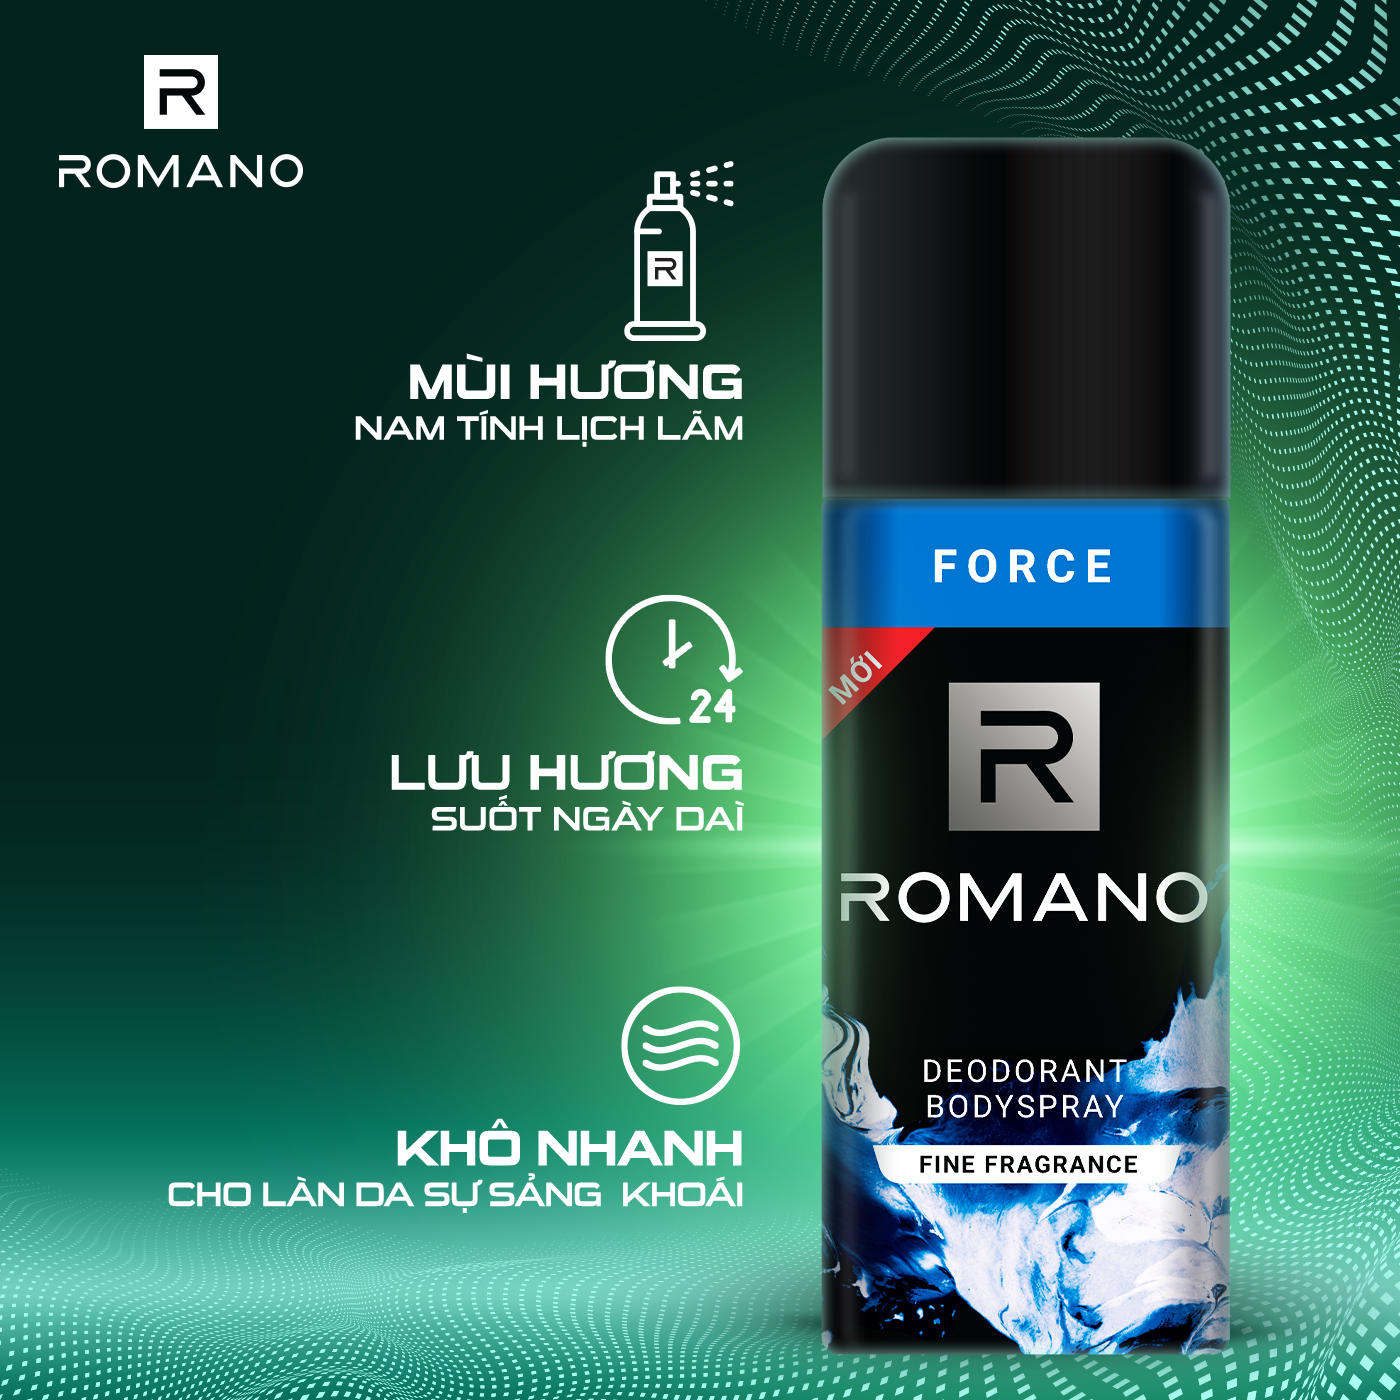 Combo 2 Xịt toàn thân Romano Force tươi mát năng động 150ml